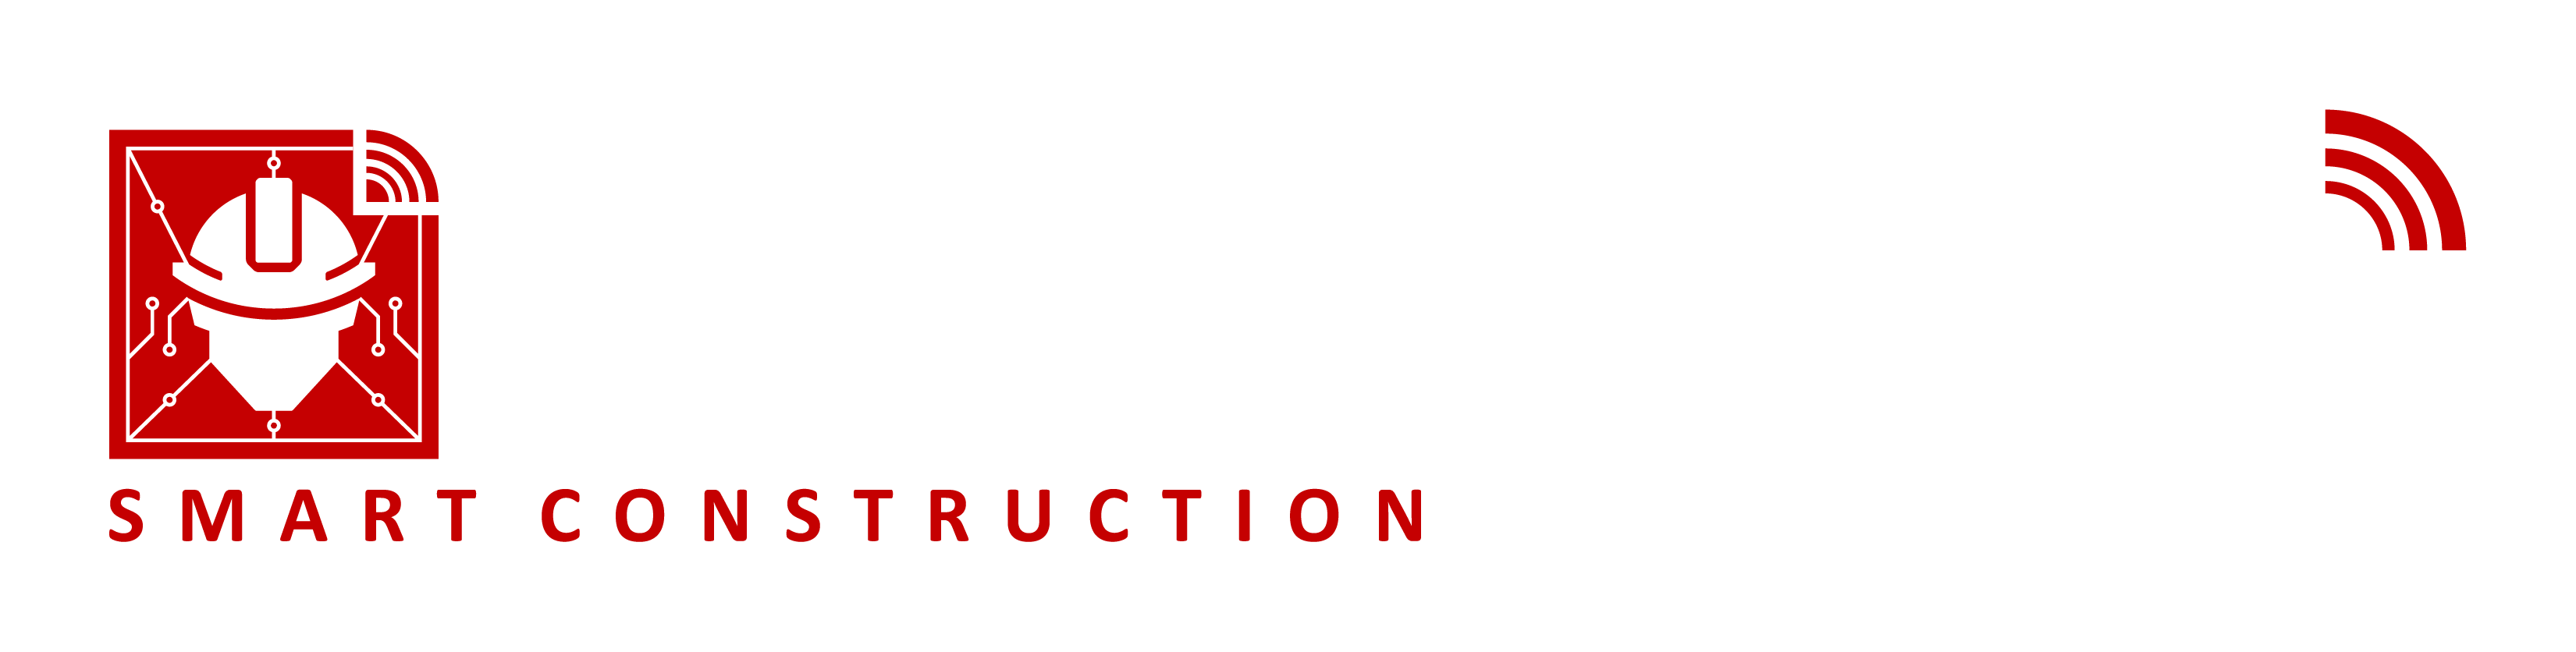 SafetyBIM